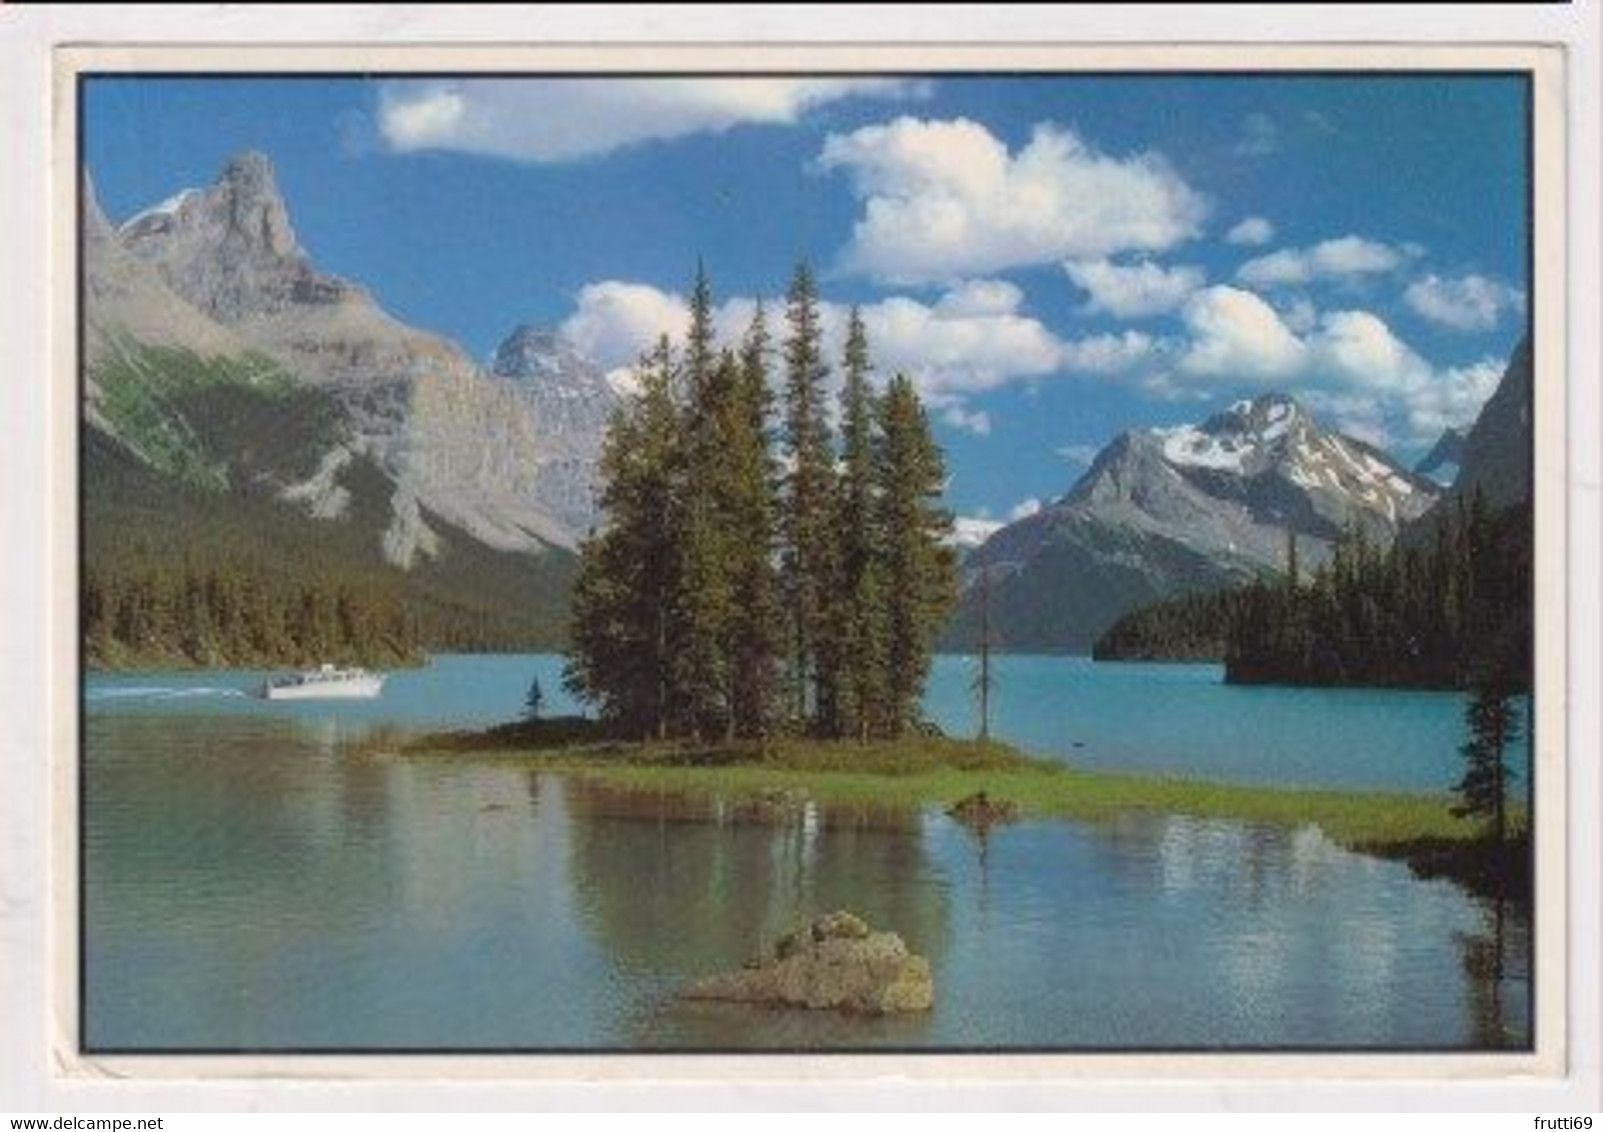 AK 034225 CANADA - Alberta - Jasper National Park - Maligne Lake - Jasper